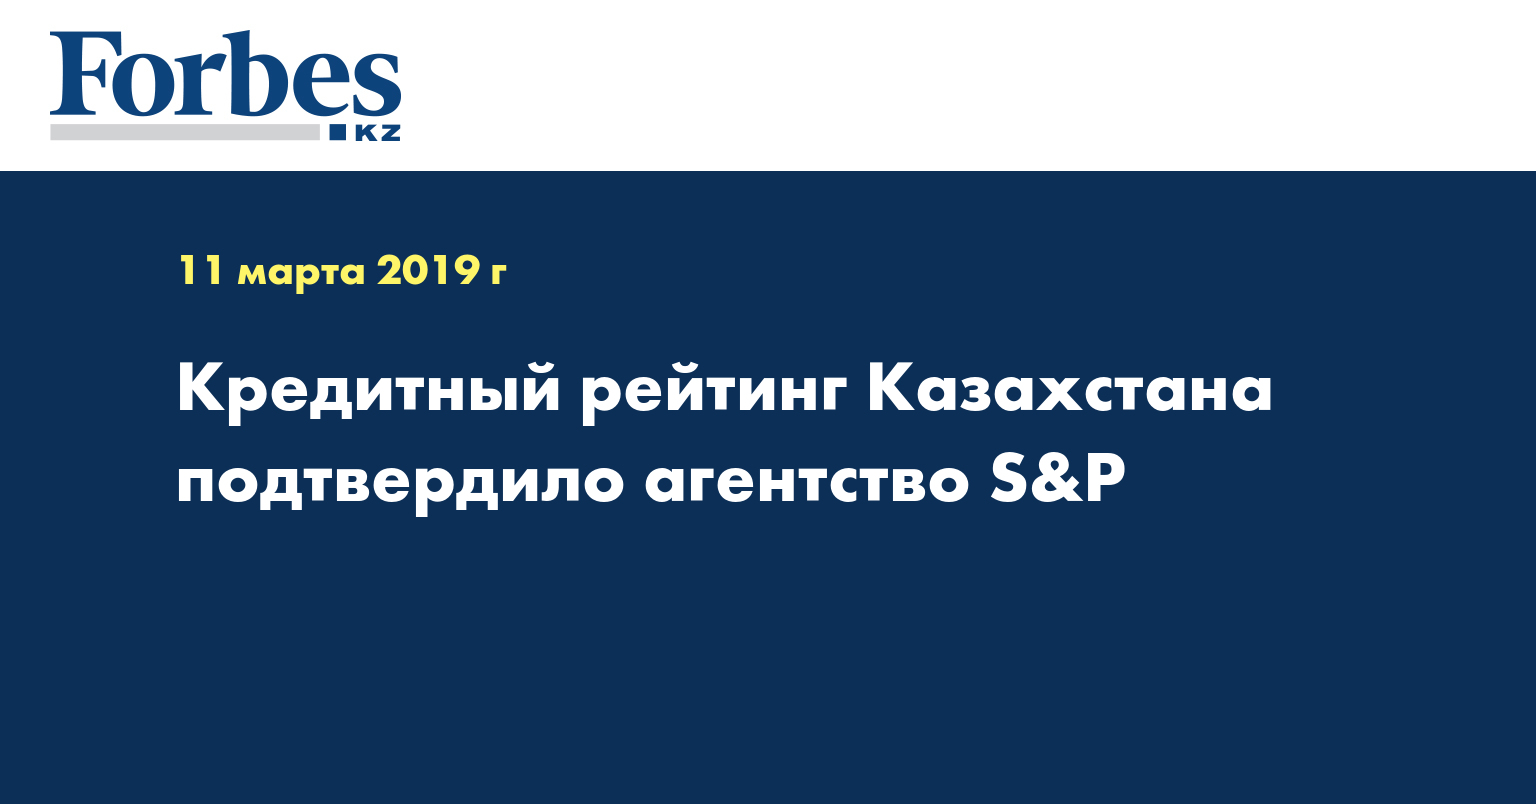 Кредитный рейтинг Казахстана подтвердило агентство S&P